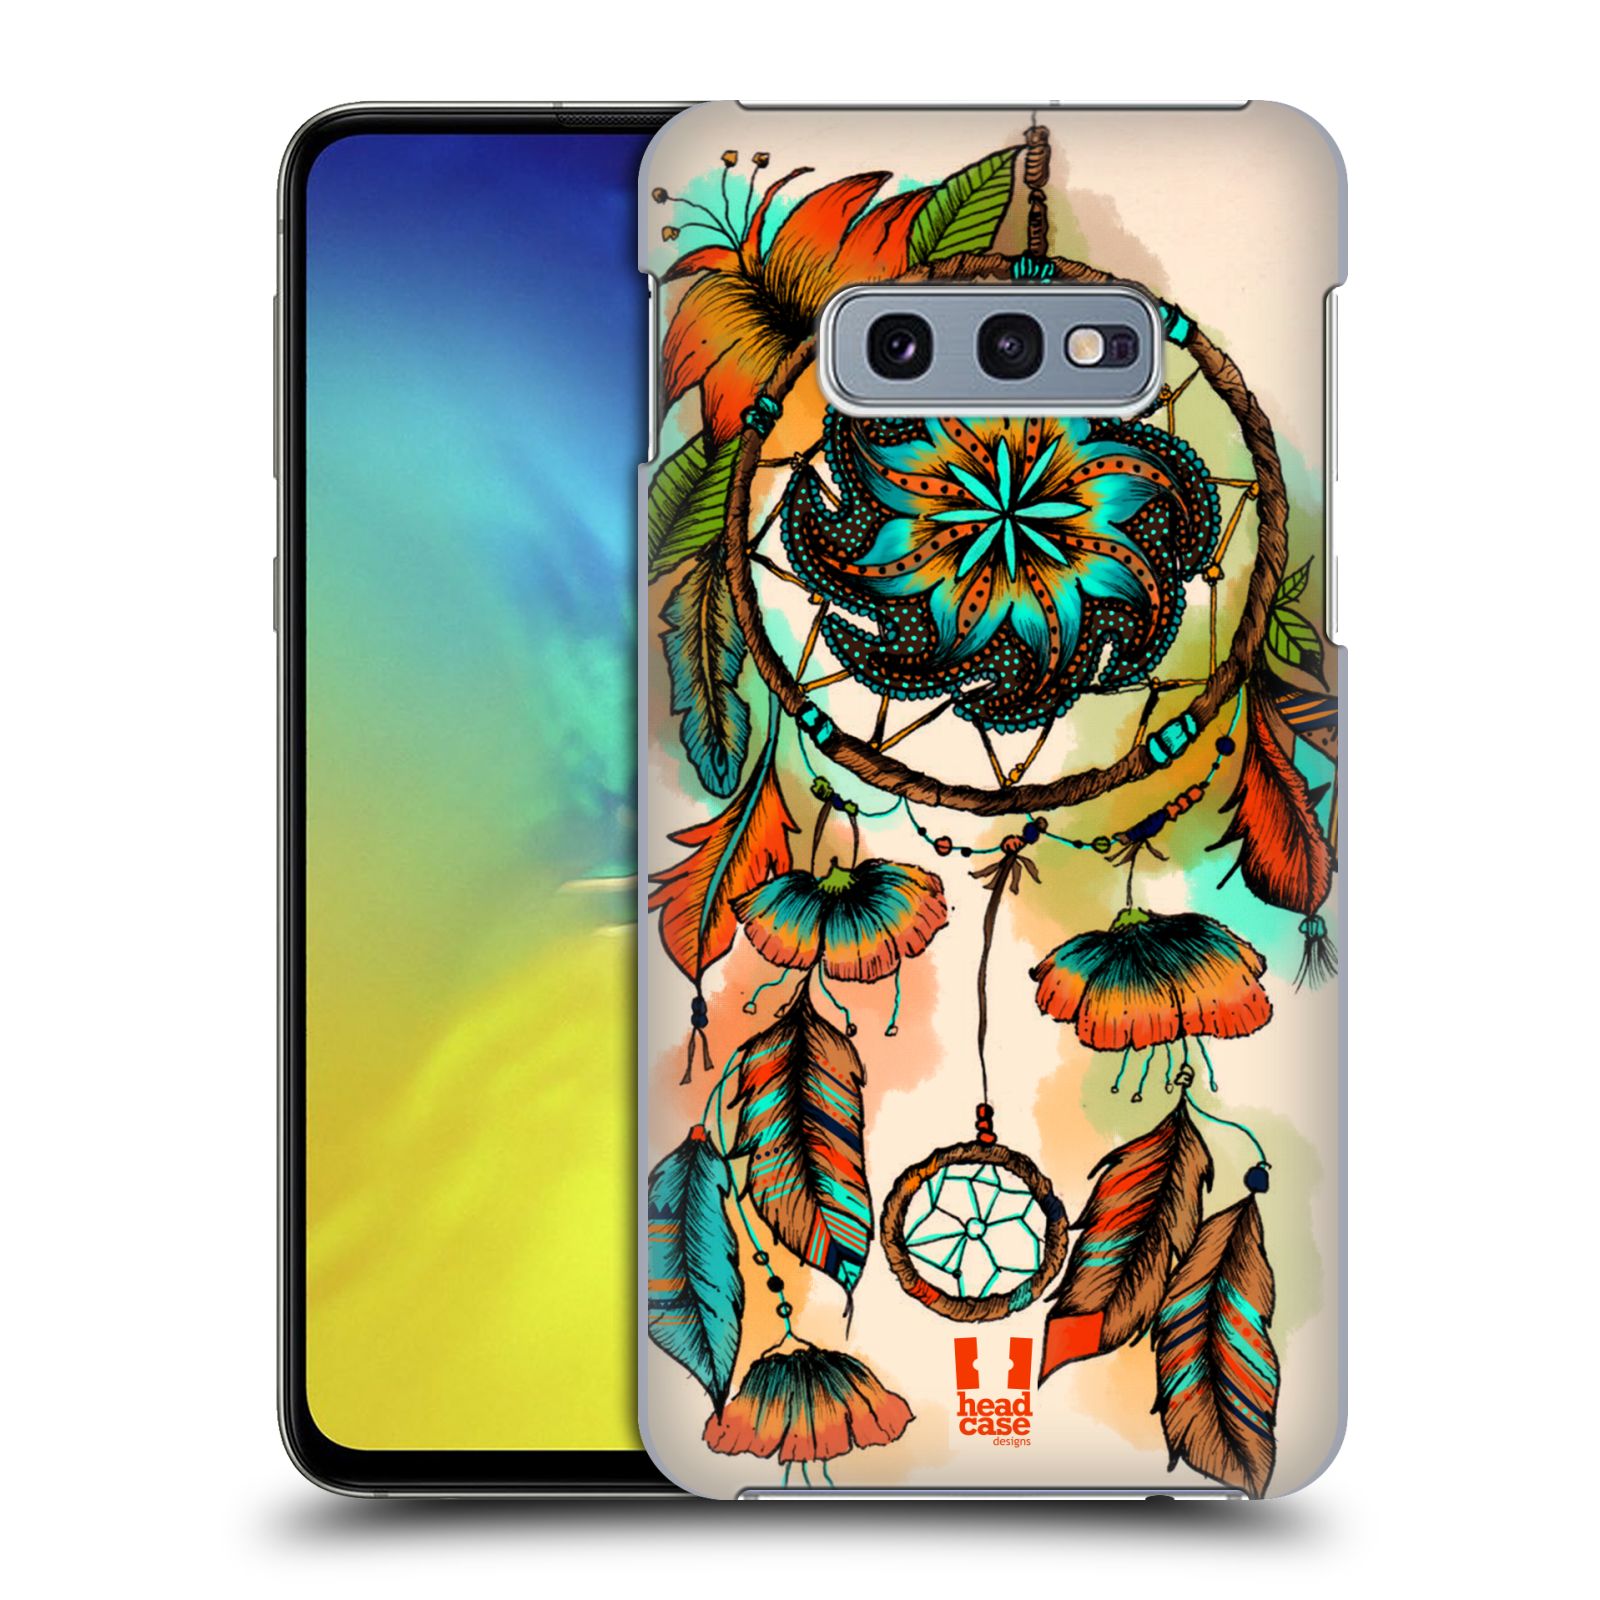 Pouzdro na mobil Samsung Galaxy S10e - HEAD CASE - vzor Květy lapač snů merňka oranžová